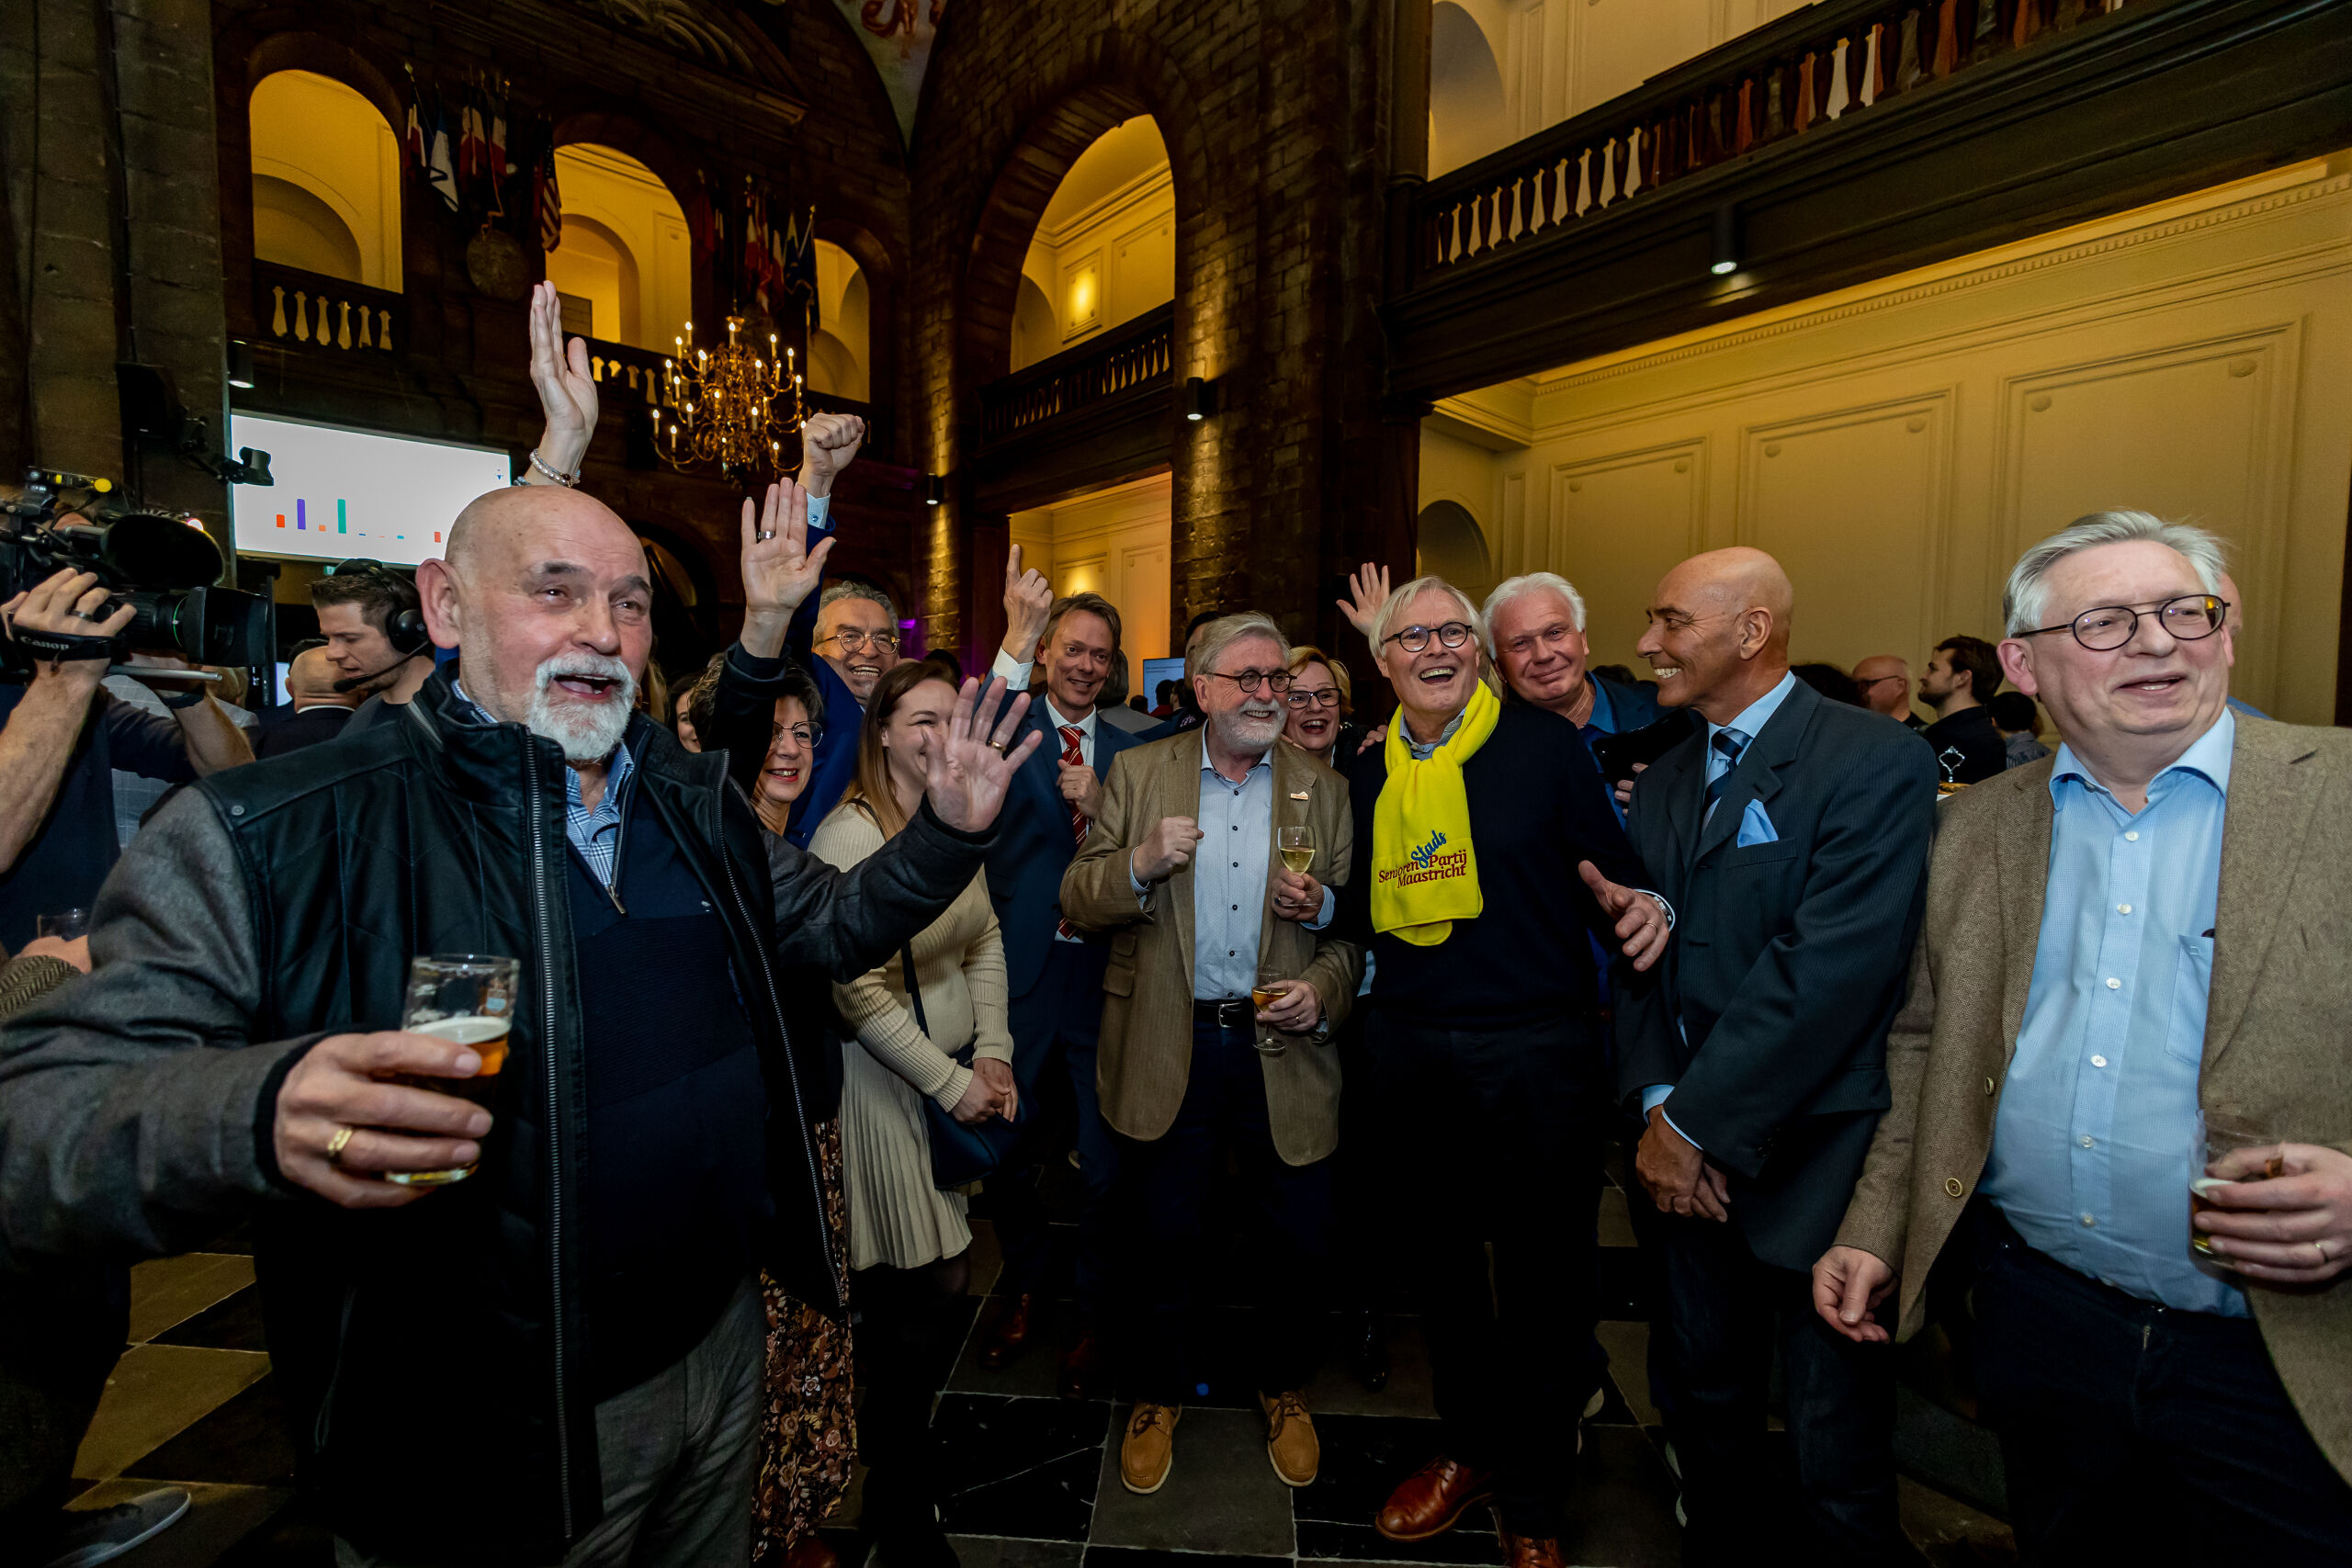 De Seniorenpartij van Maastricht met lijststrekker Frans Bastiaens wint de gemeenteraadsverkiezingen in Maastricht. 